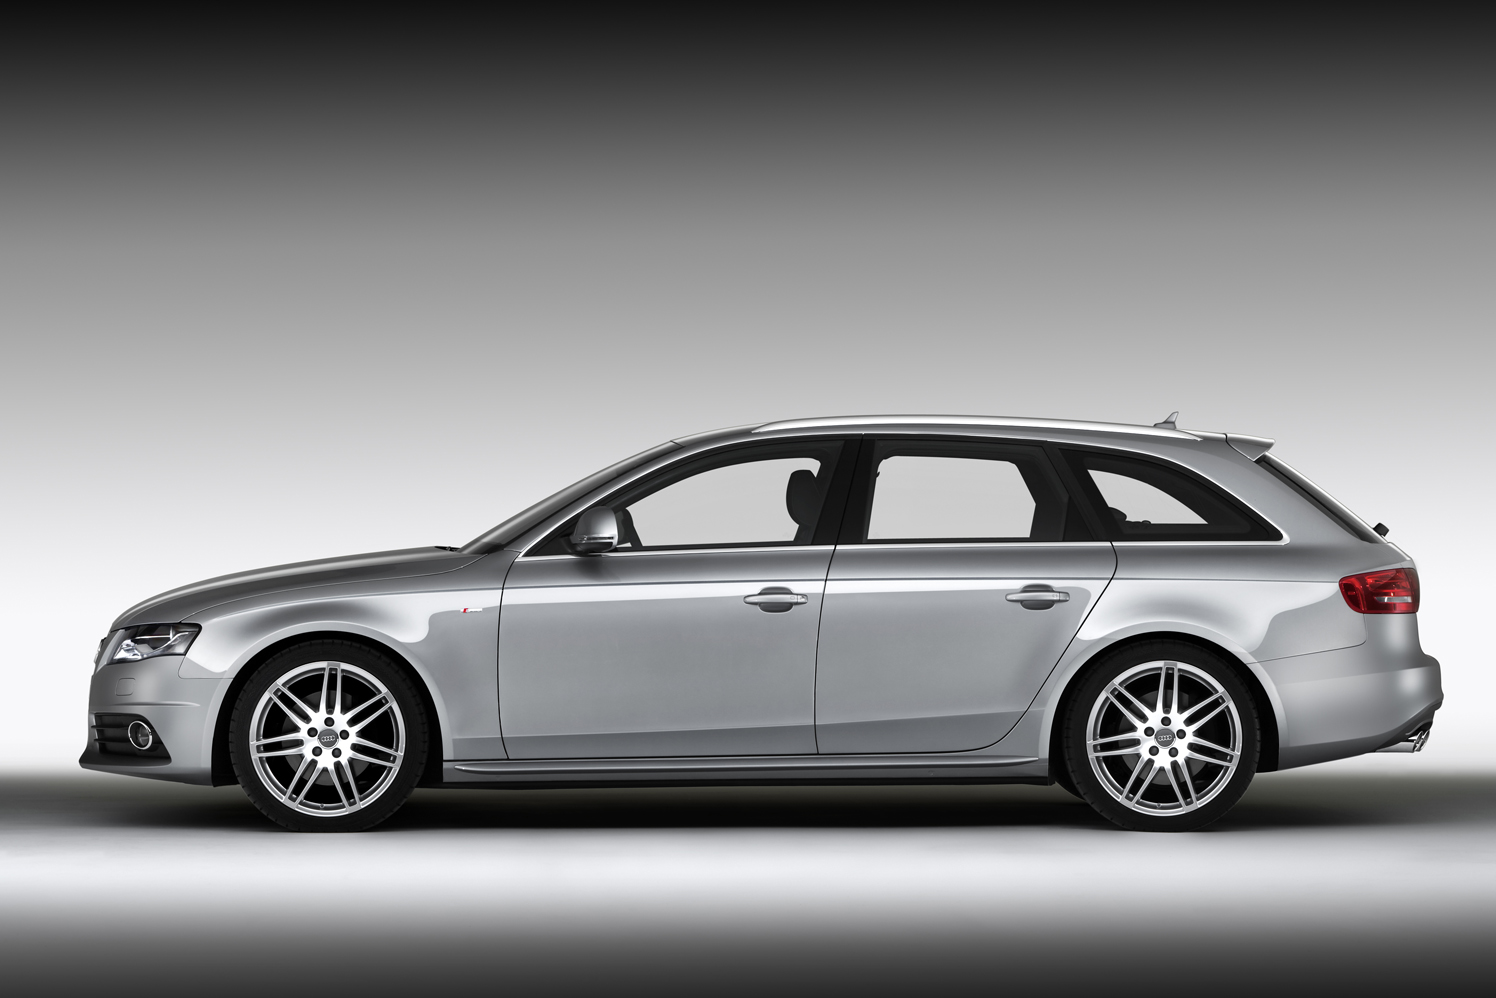 Audi A4 Avant 2.0 TFSi